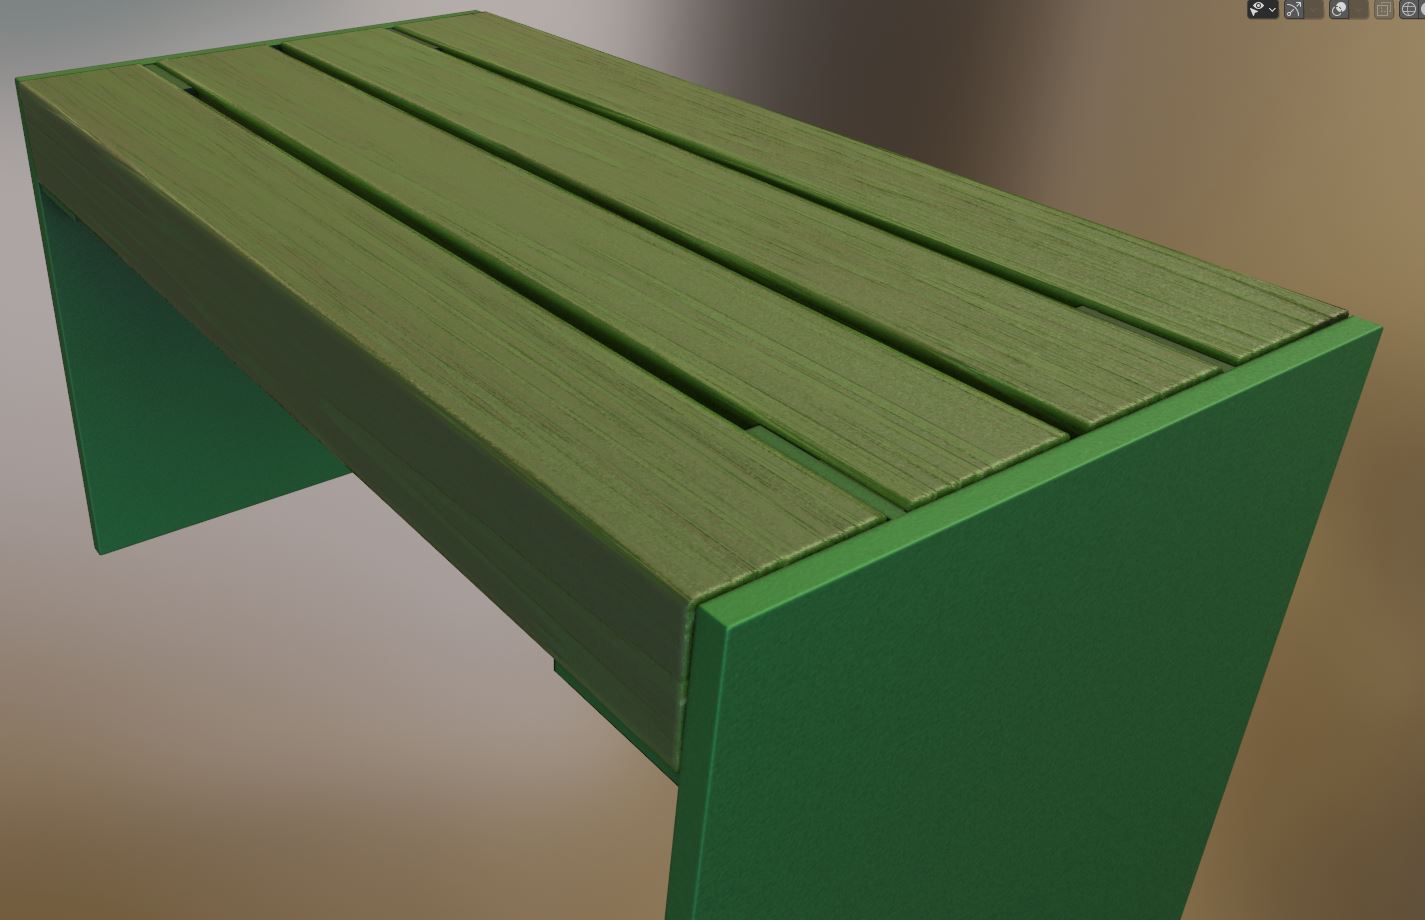  Low-poly Park Bench 8 Oak Green Metal Frame 3